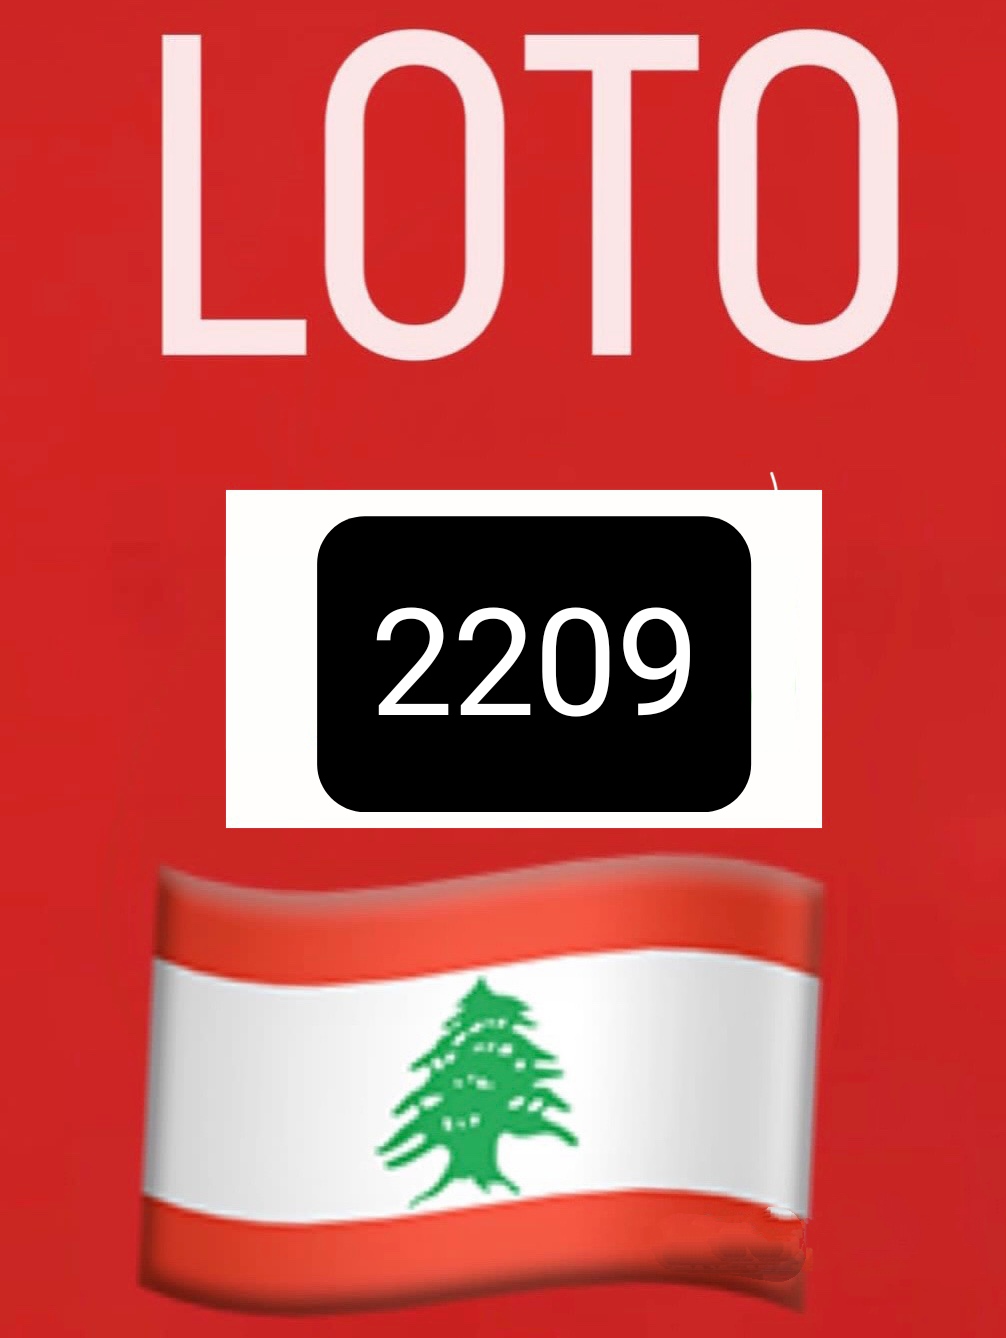 نتائج اللوتو اللبناني 2209 اليوم الاثنين